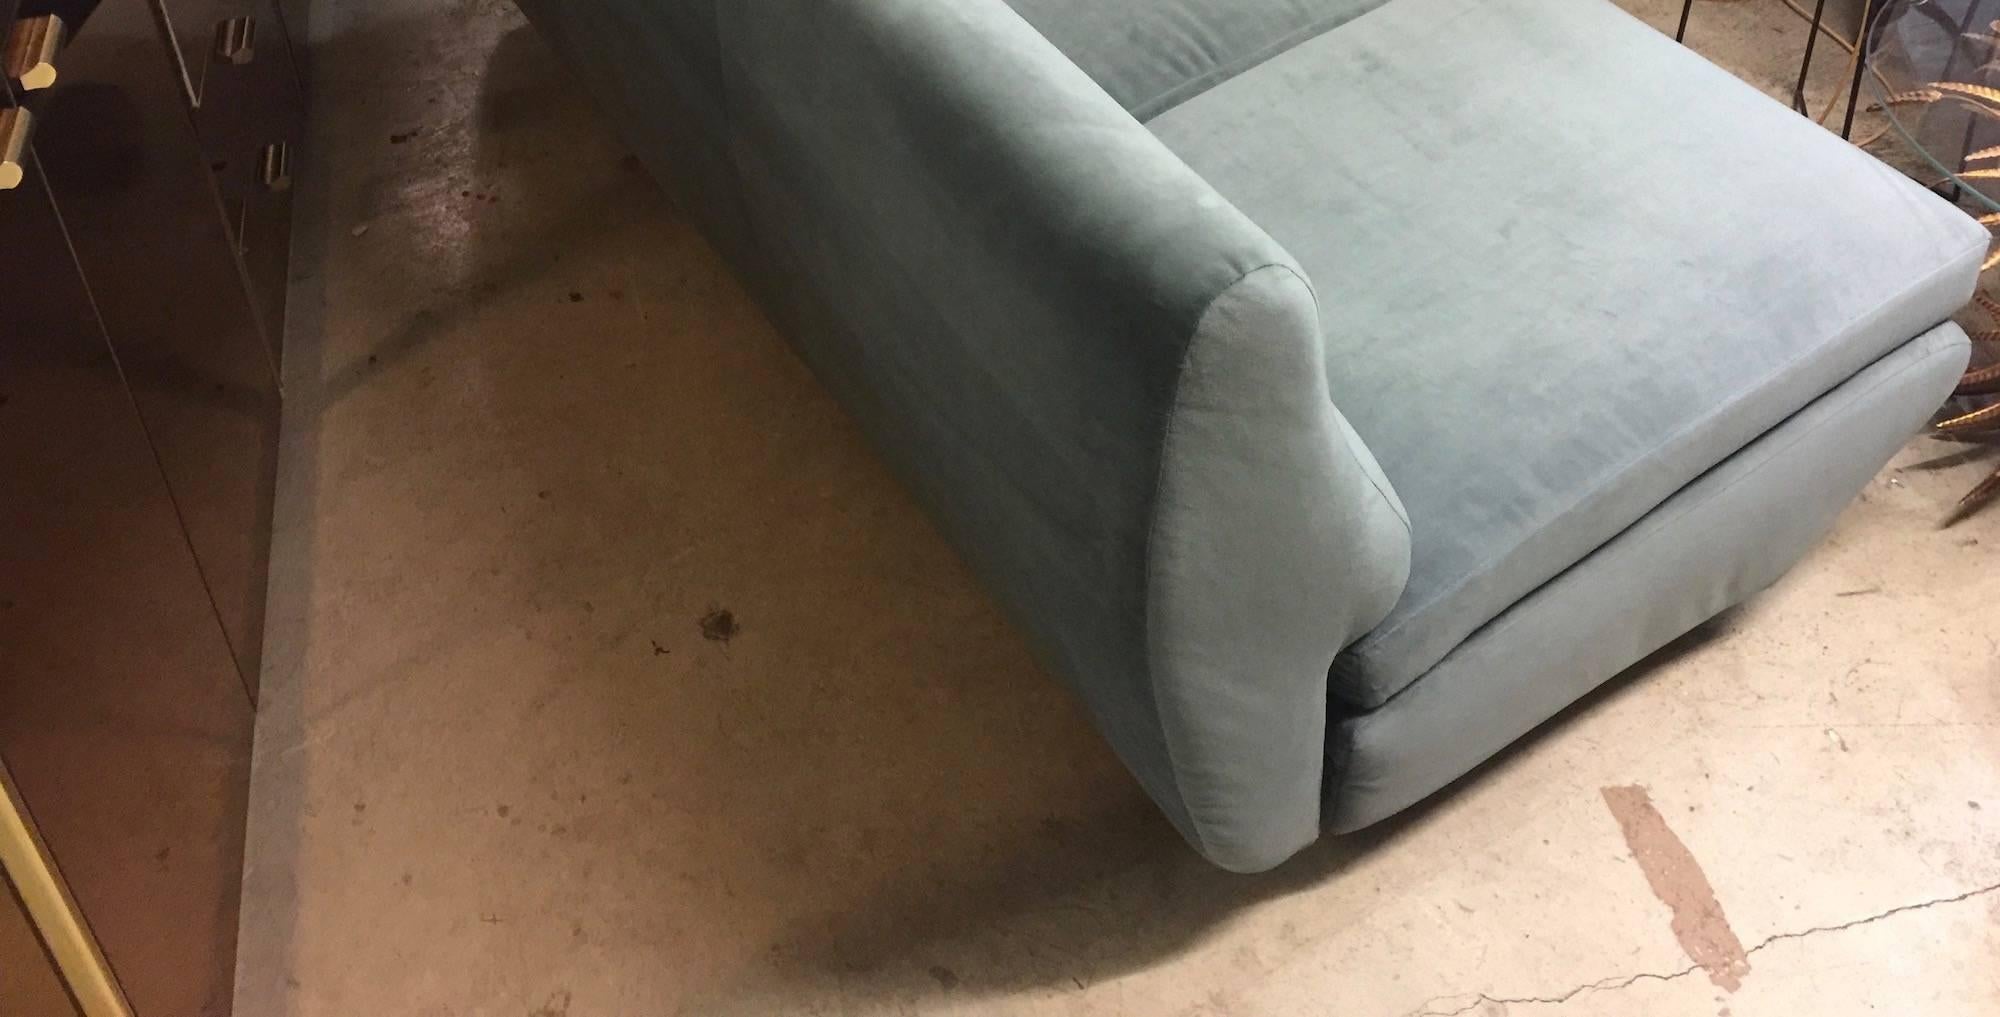 Sleep o matic sofa by Marco Zanuso I. foam, belts and fabric new. Wonderful sea green velvet.